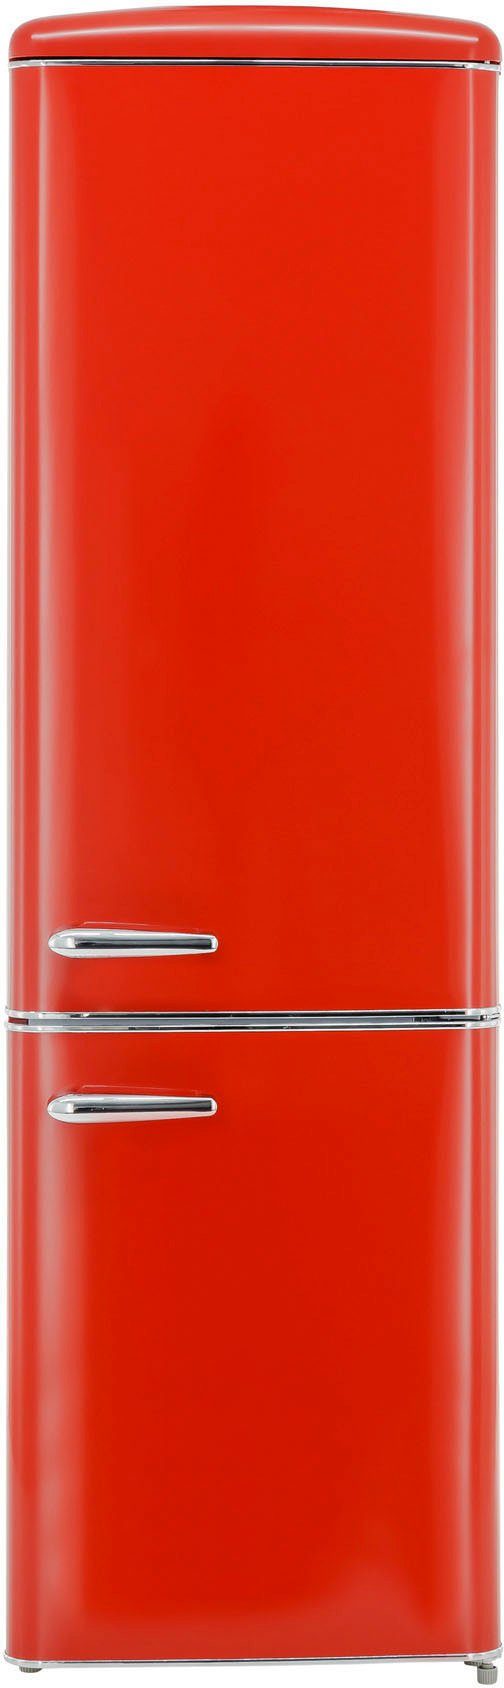 Günstigster Preis exquisit Kühl-/Gefrierkombination RKGC250-70-H-160E rot, 181 55 cm breit hoch, cm